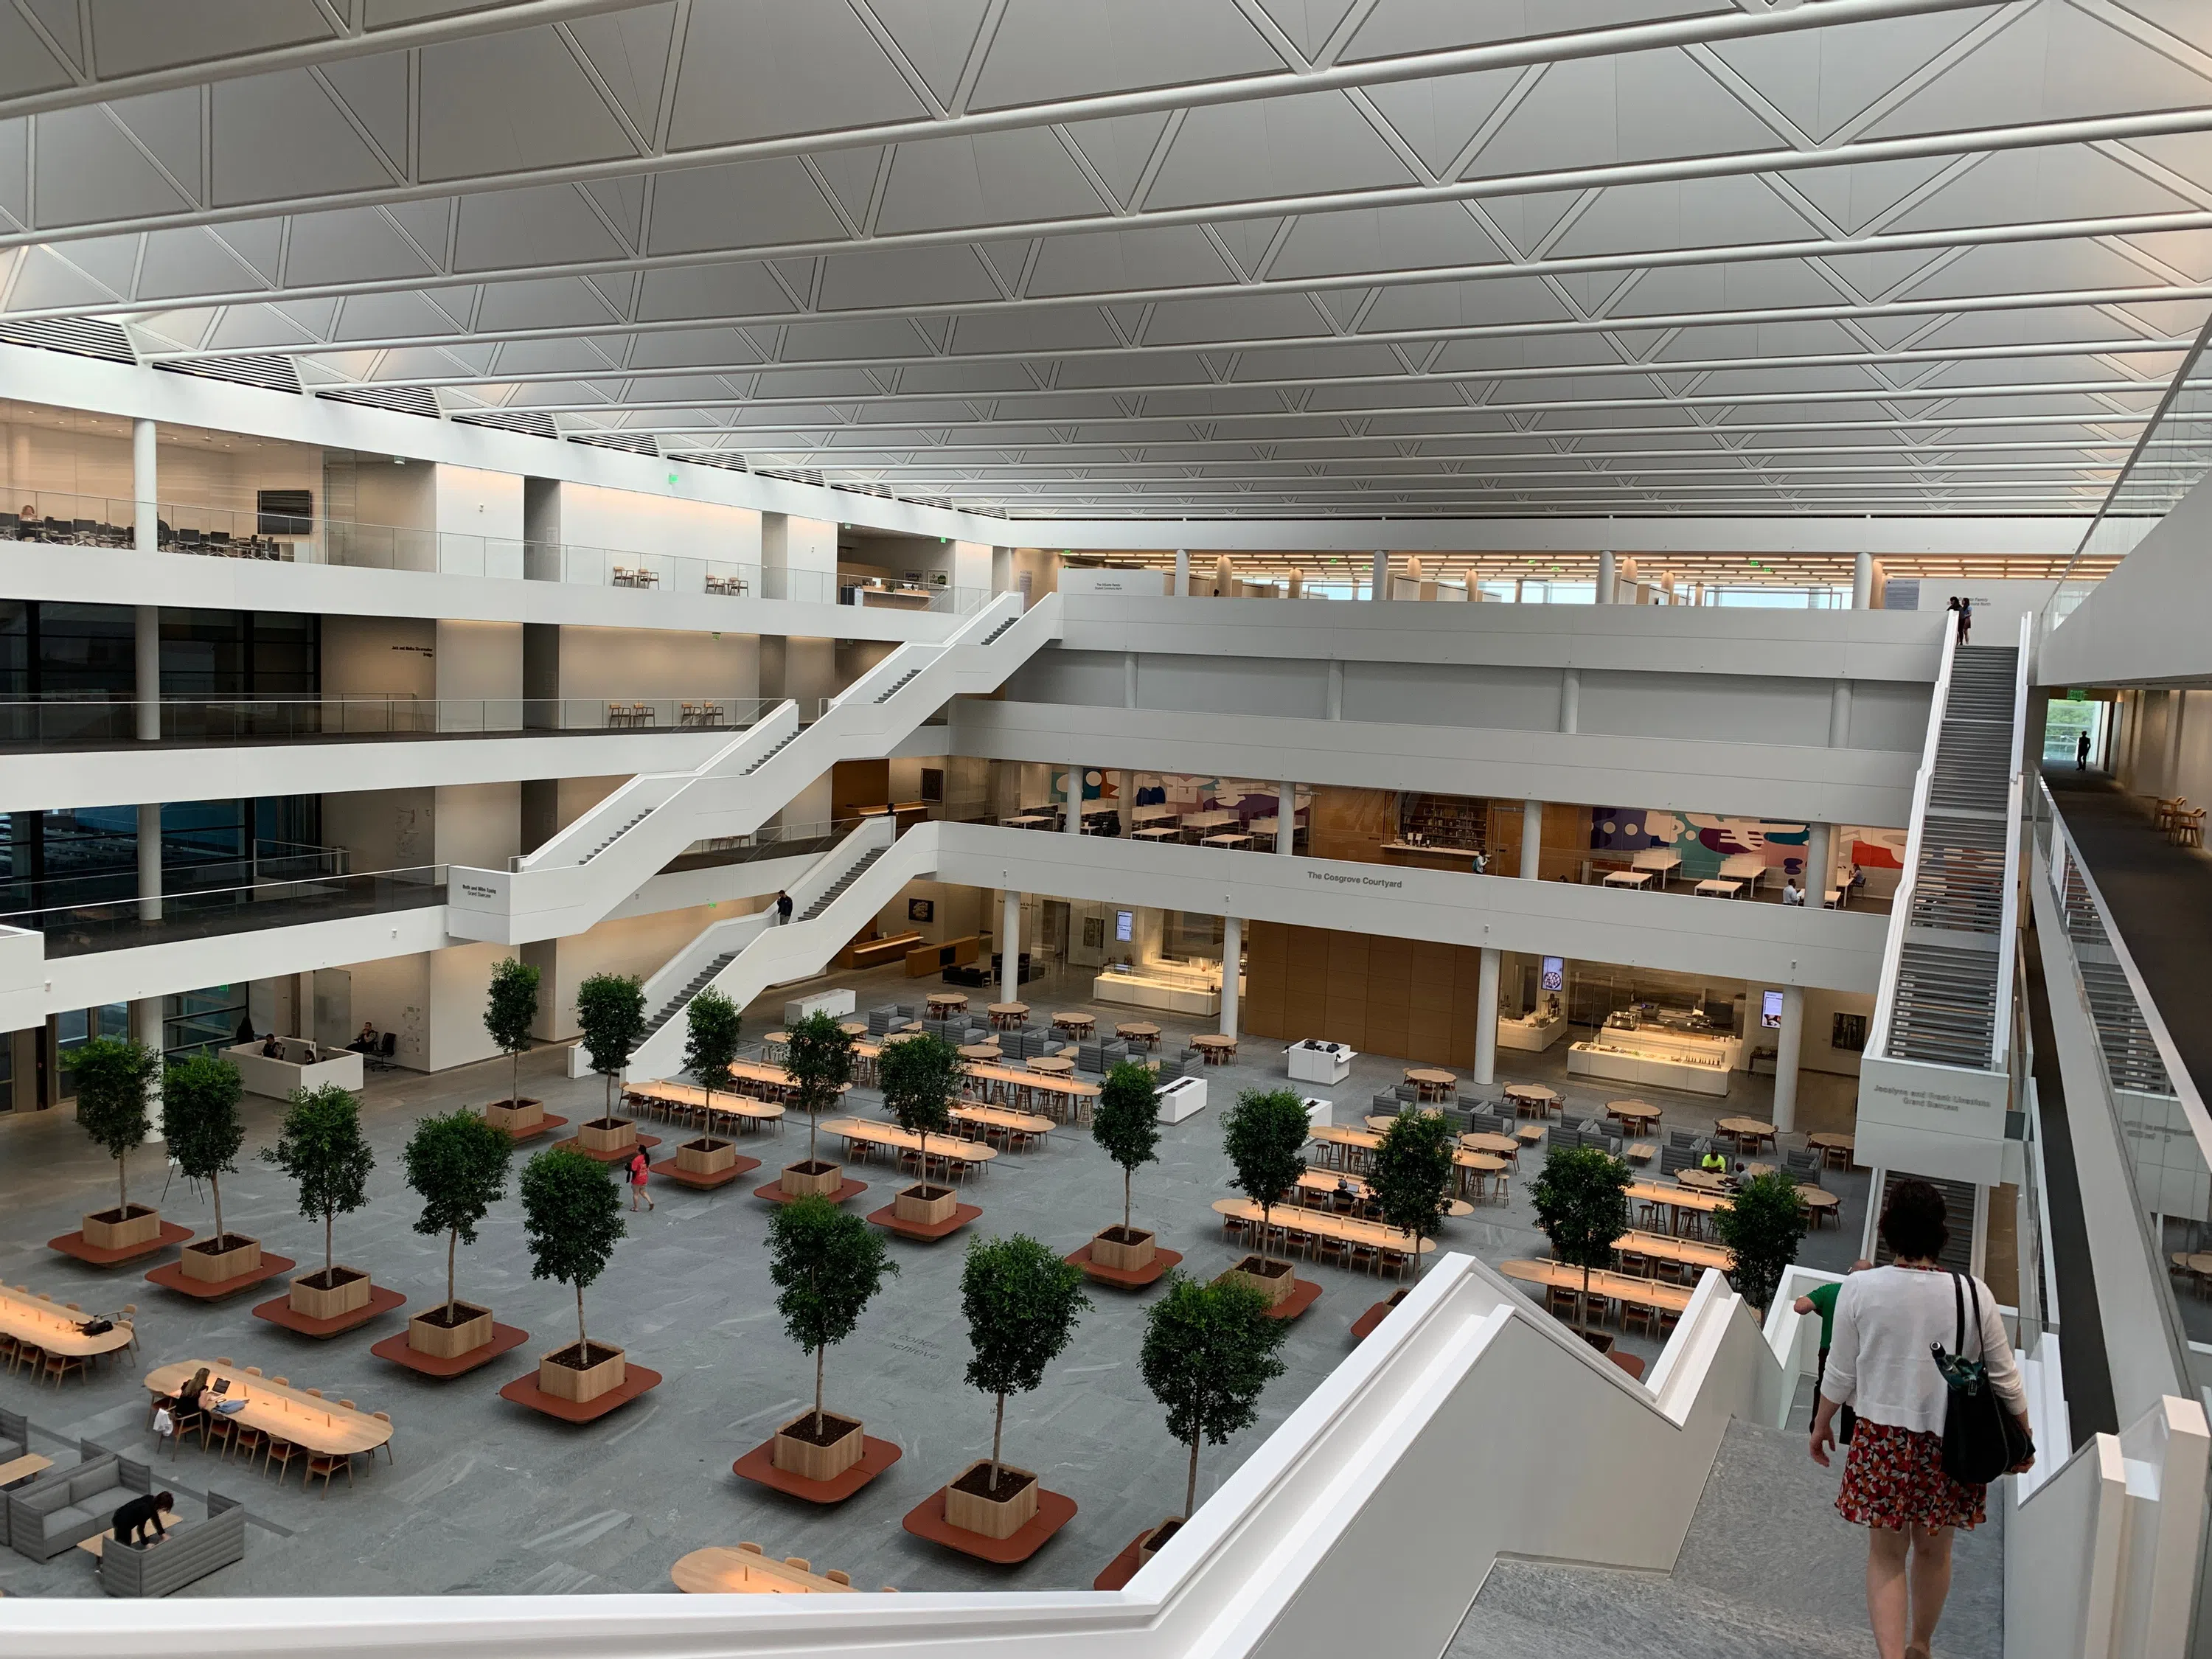 Atrium at the health education campus